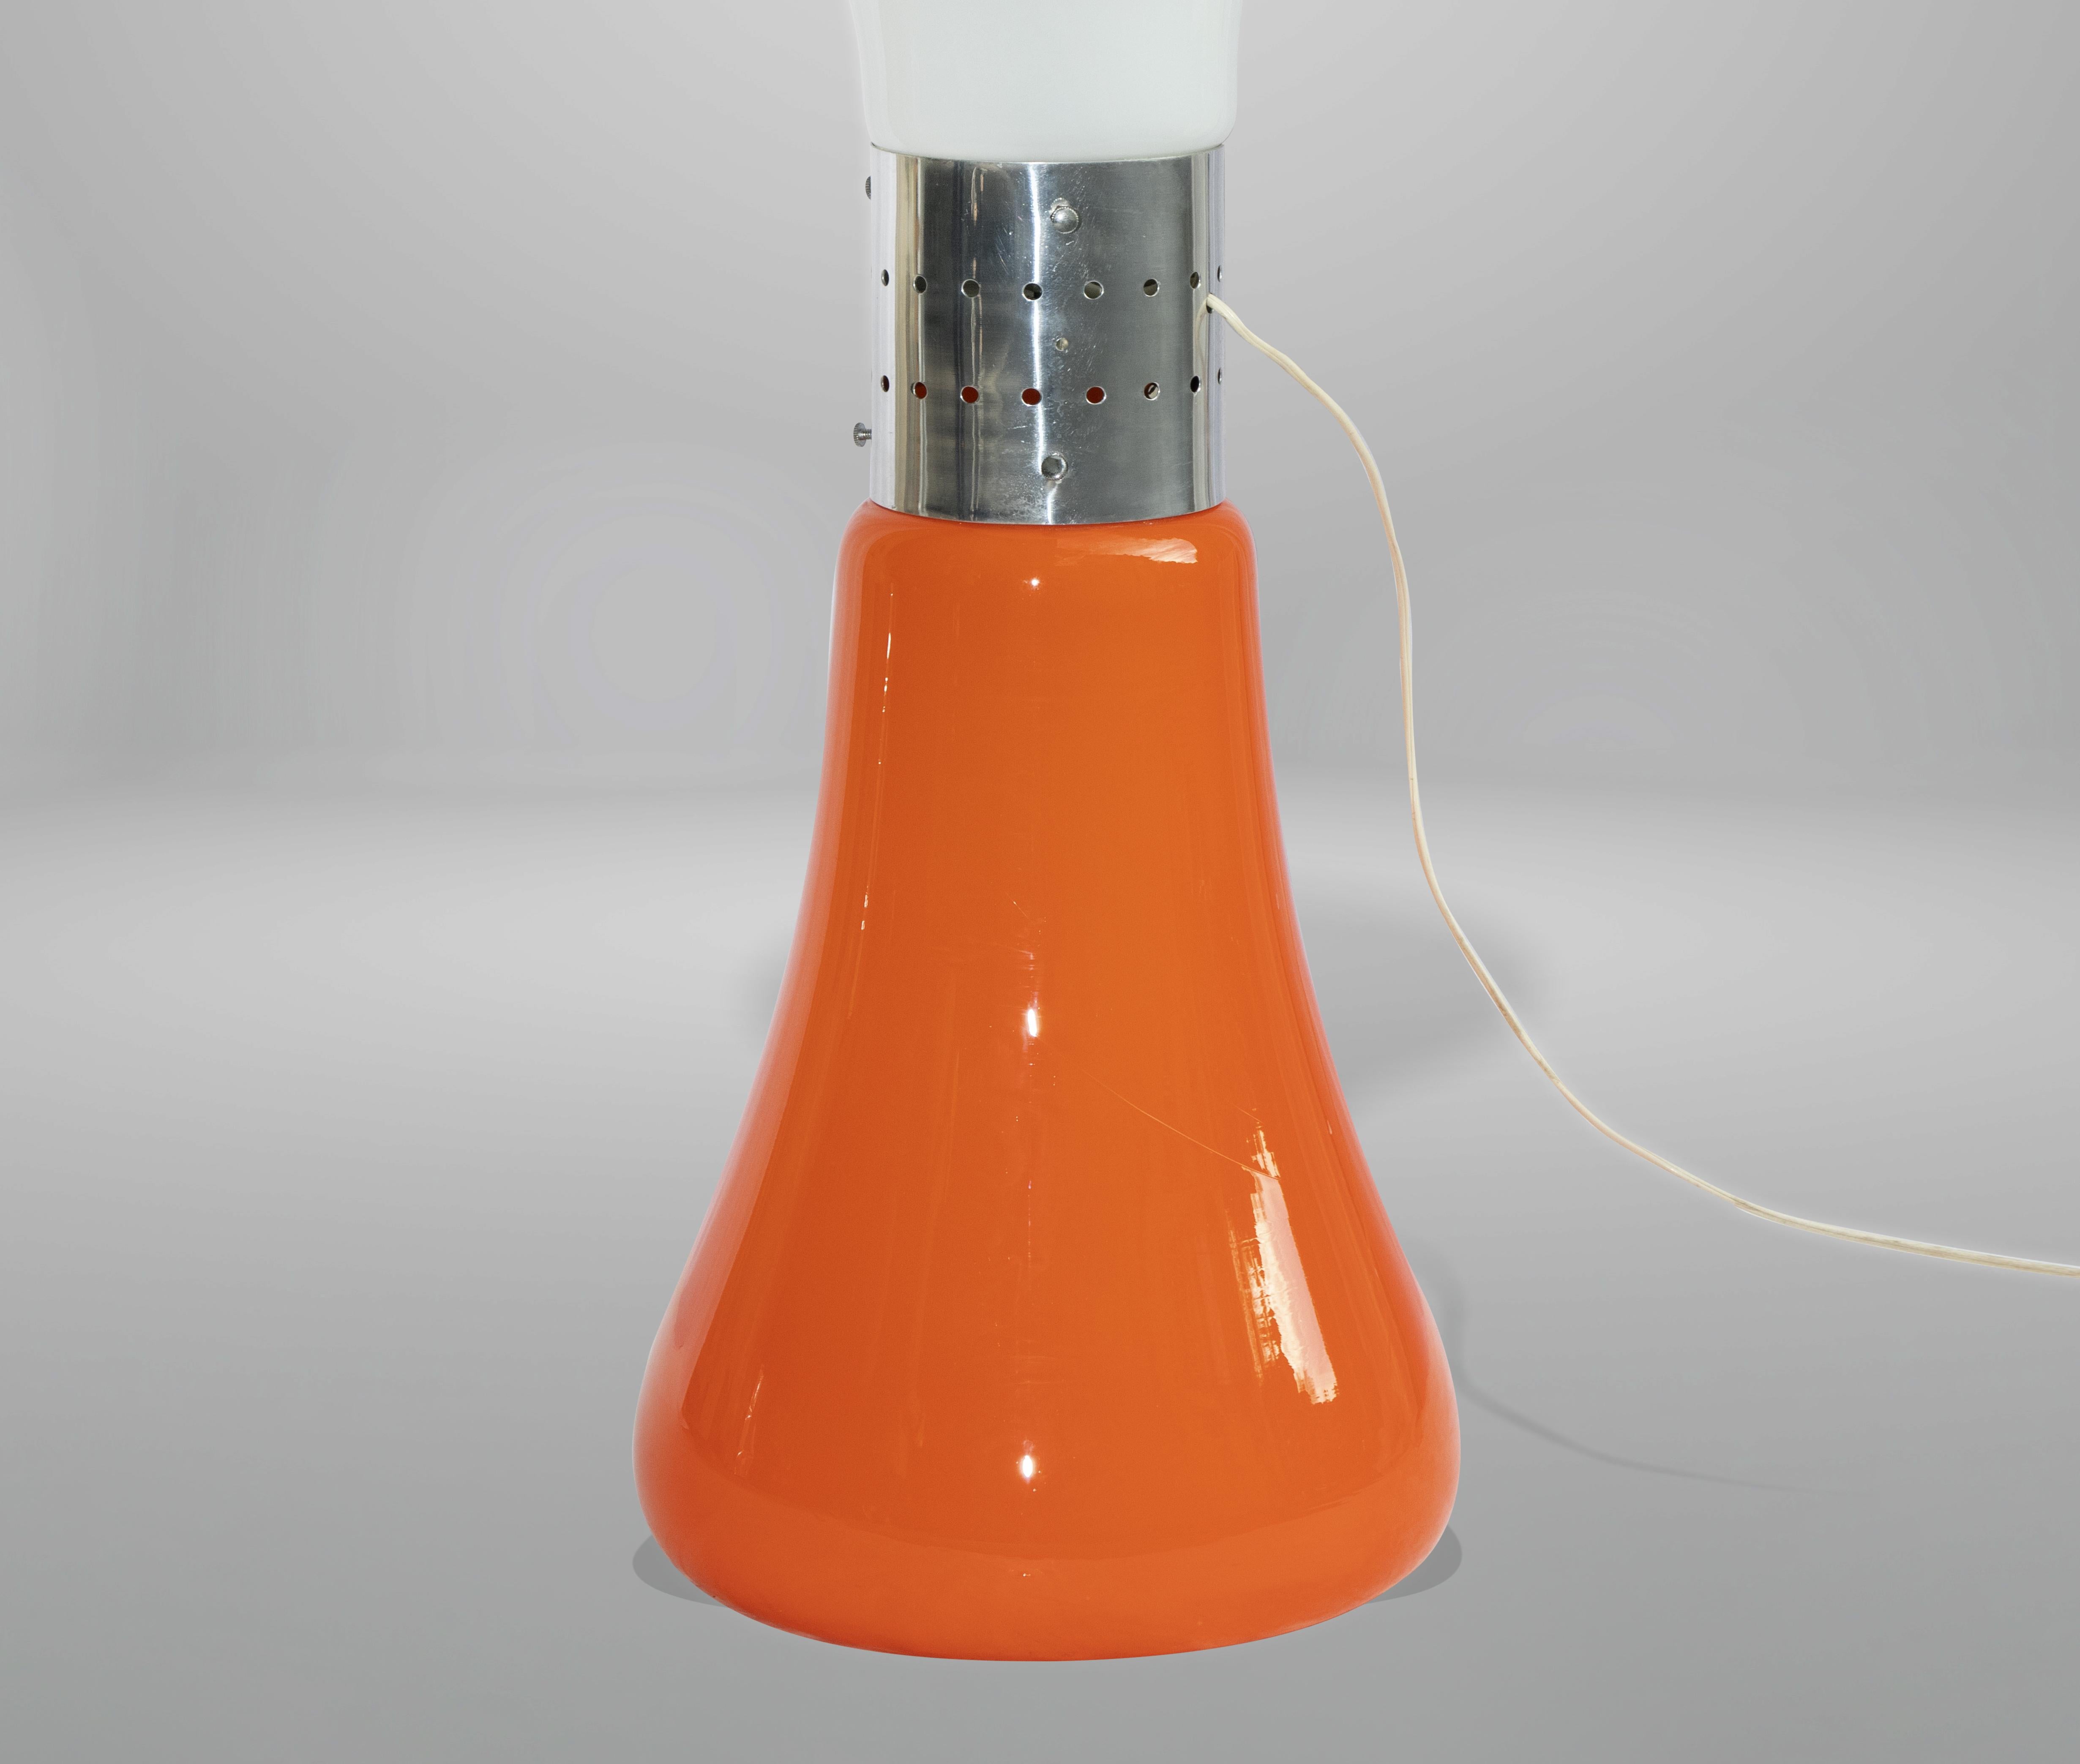 Le lampadaire Birillo est une lampe design réalisée dans la moitié des années 1970 par Carlo Nason.

Une belle lampe vintage en verre orange de Murano.

Diffuseurs en verre, élément central de liaison en acier. Deux éclairages.

Carlo Nason (1935